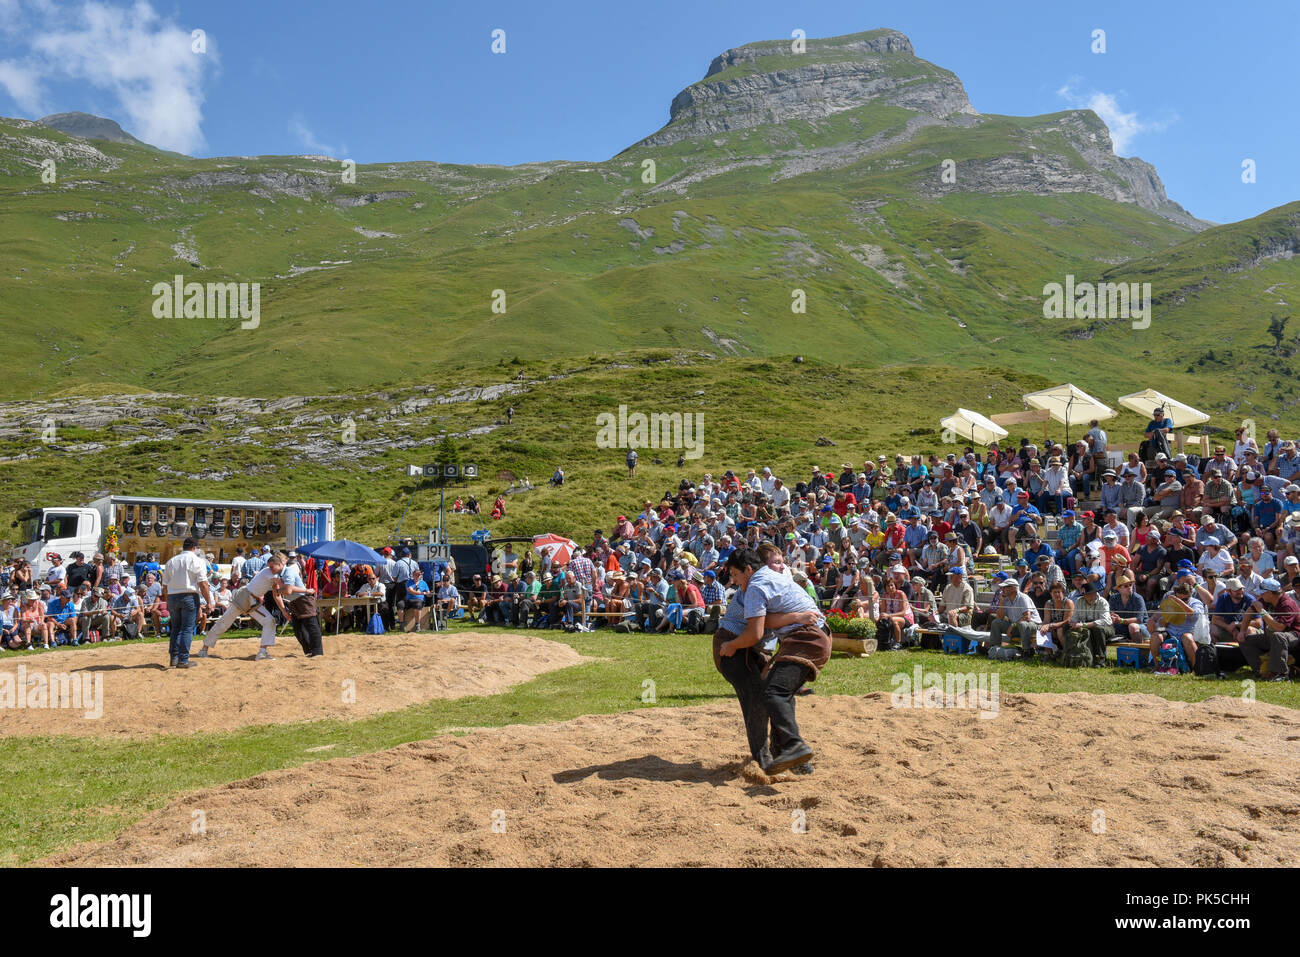 Engstlenalp, Suisse - 4 août 2018 : Deux prenant part à un match de lutte traditionnelle (appelé "chwingen') à l'Engstlenalp sur les Alpes Suisses Banque D'Images